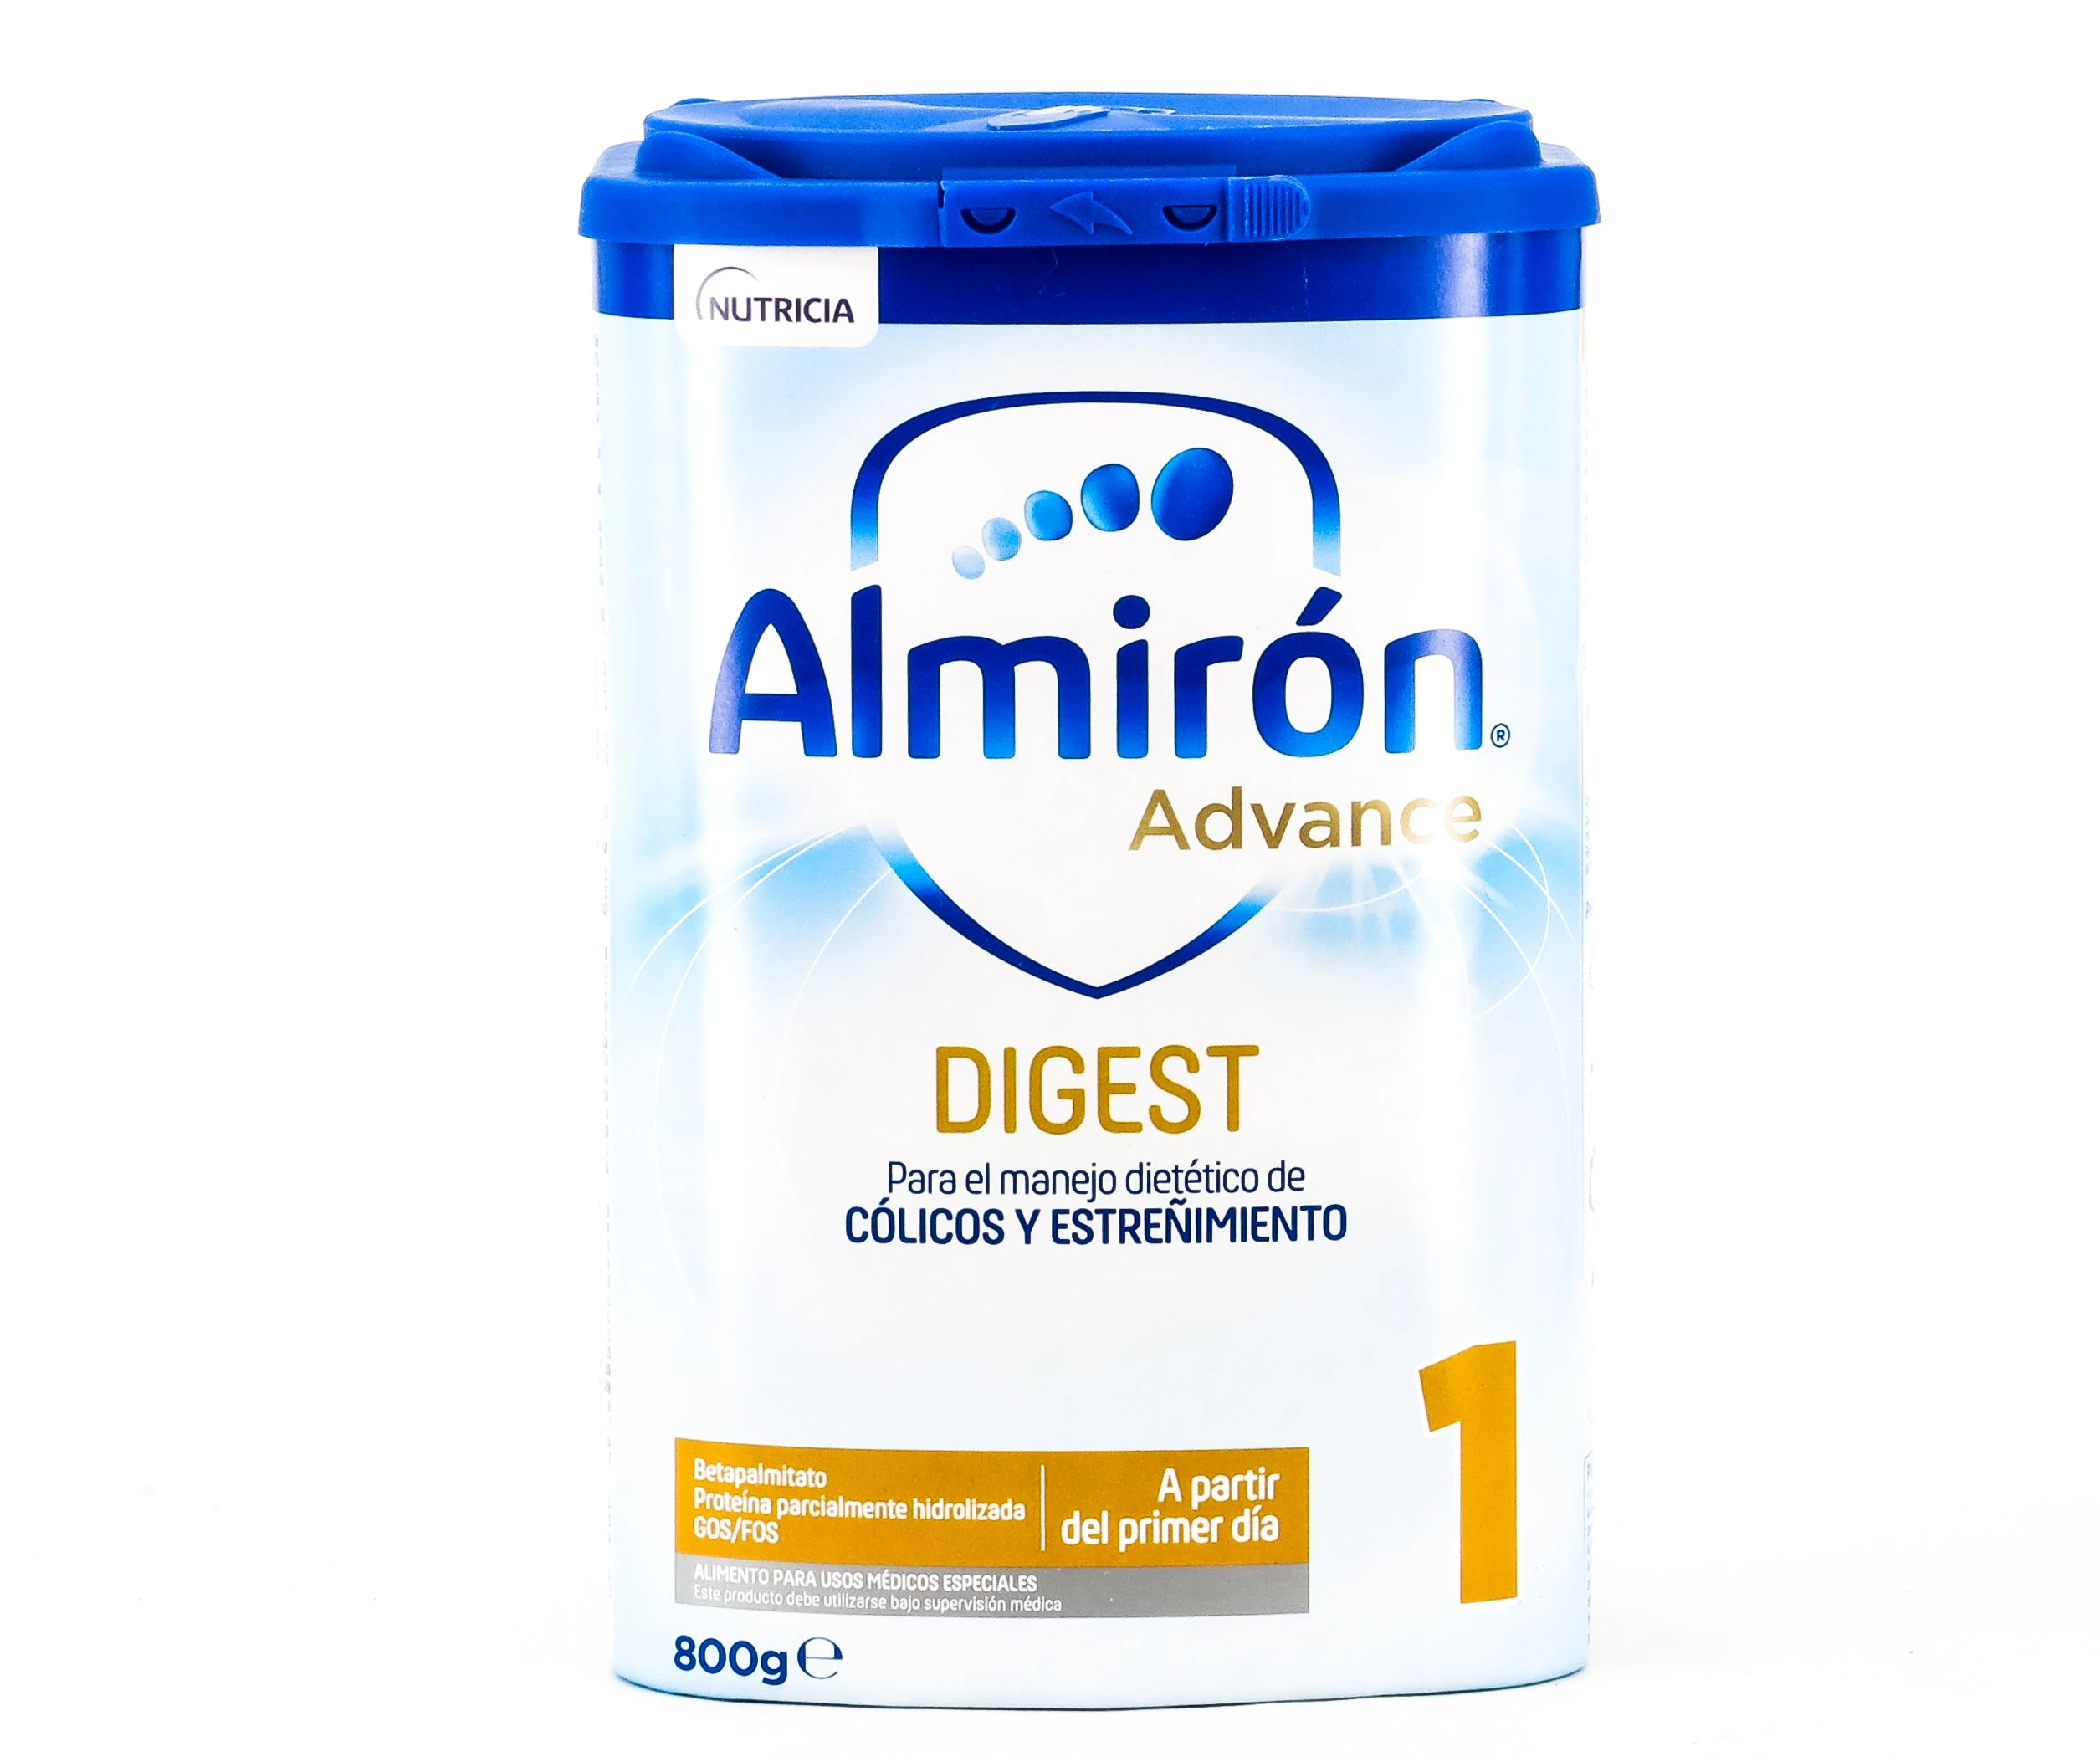 Comprar Almiron Advance Digest 1, 800g al mejor precio